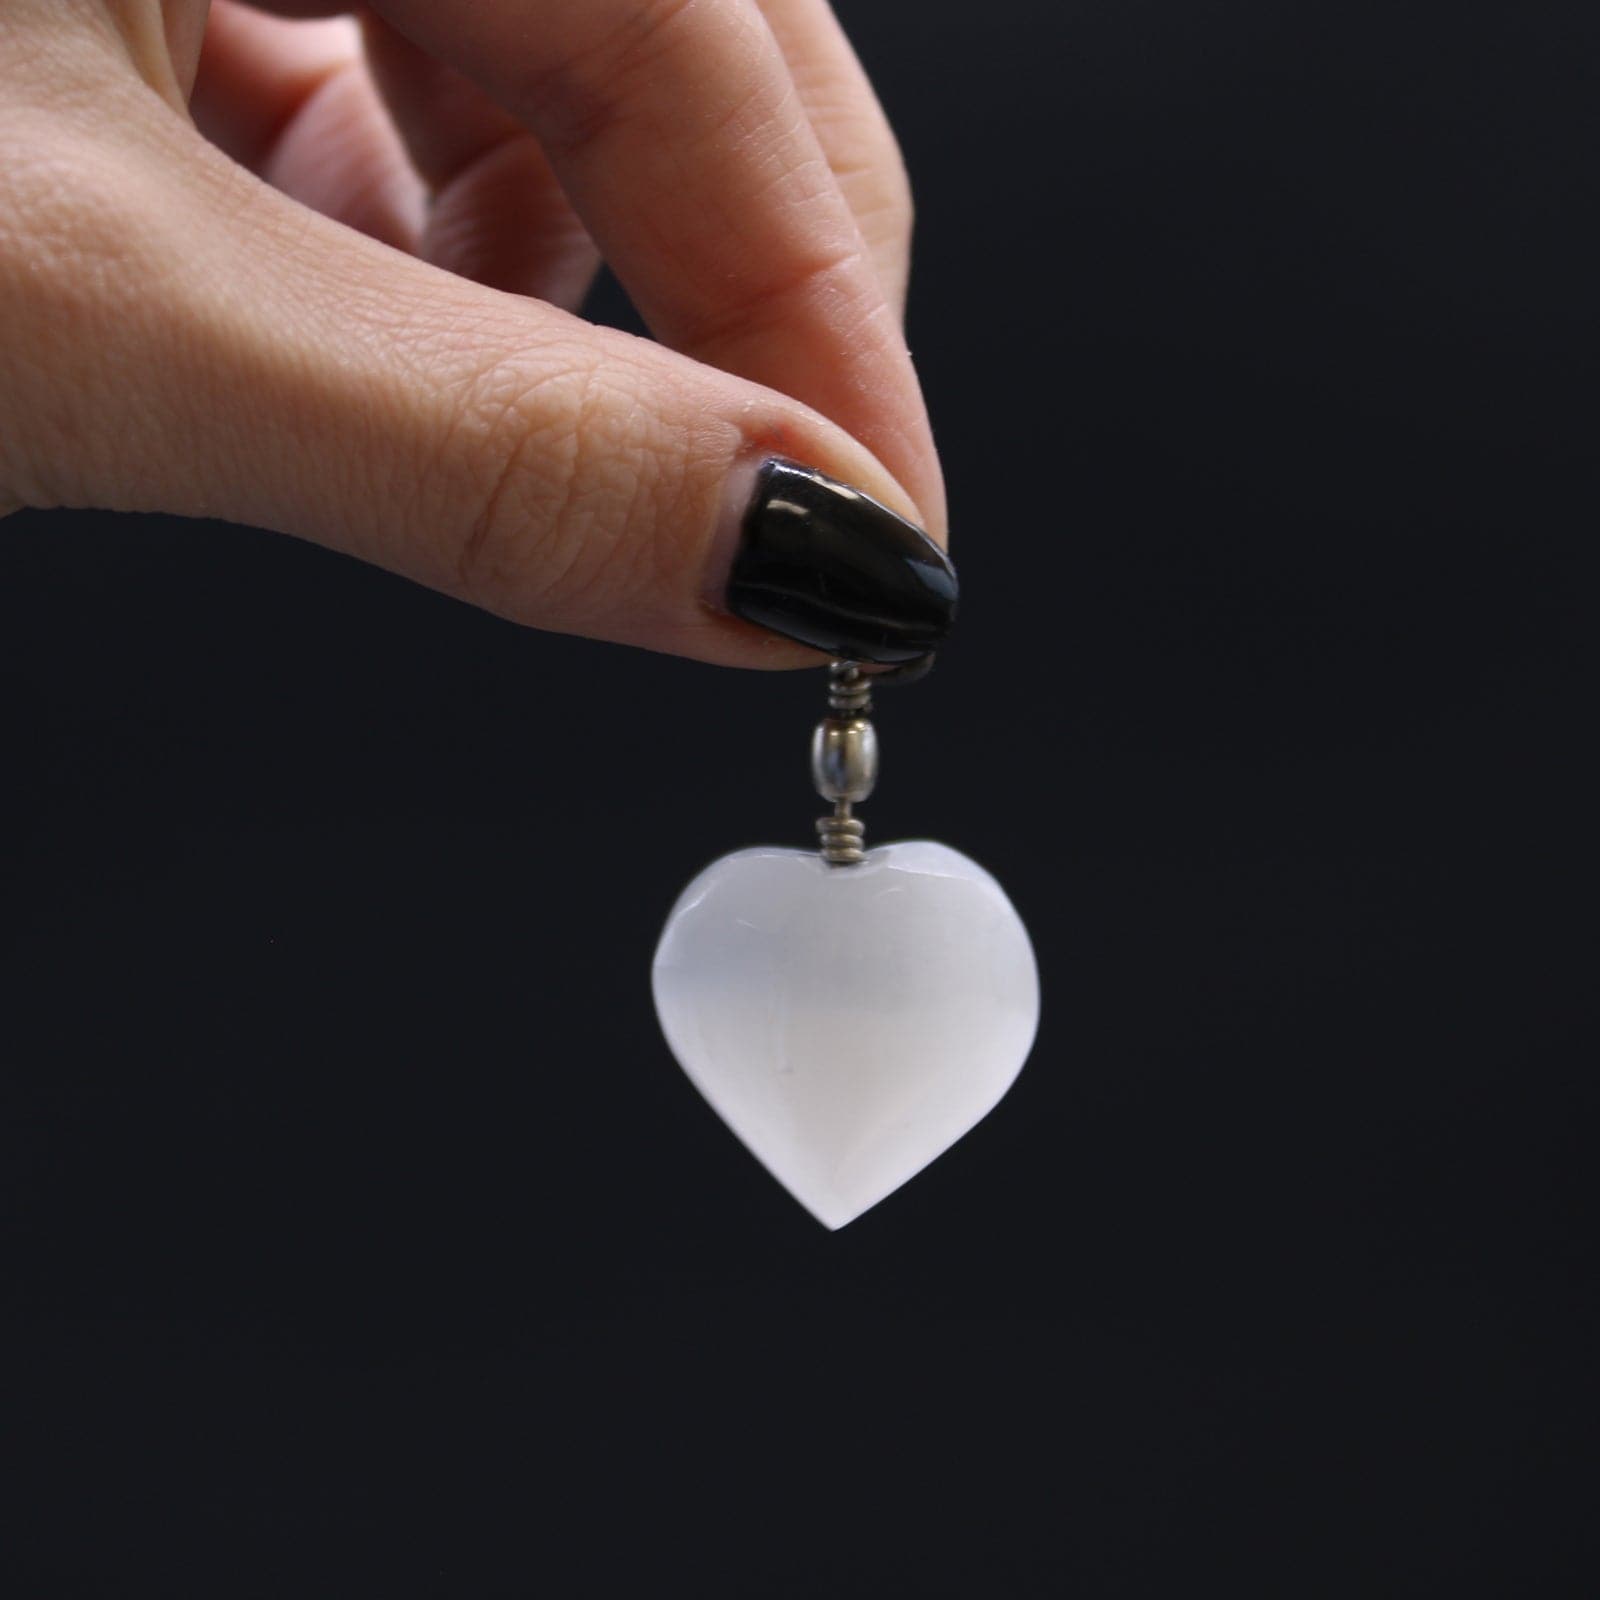 Selenite Heart Pendant - best price from Maltashopper.com SELPEN-01